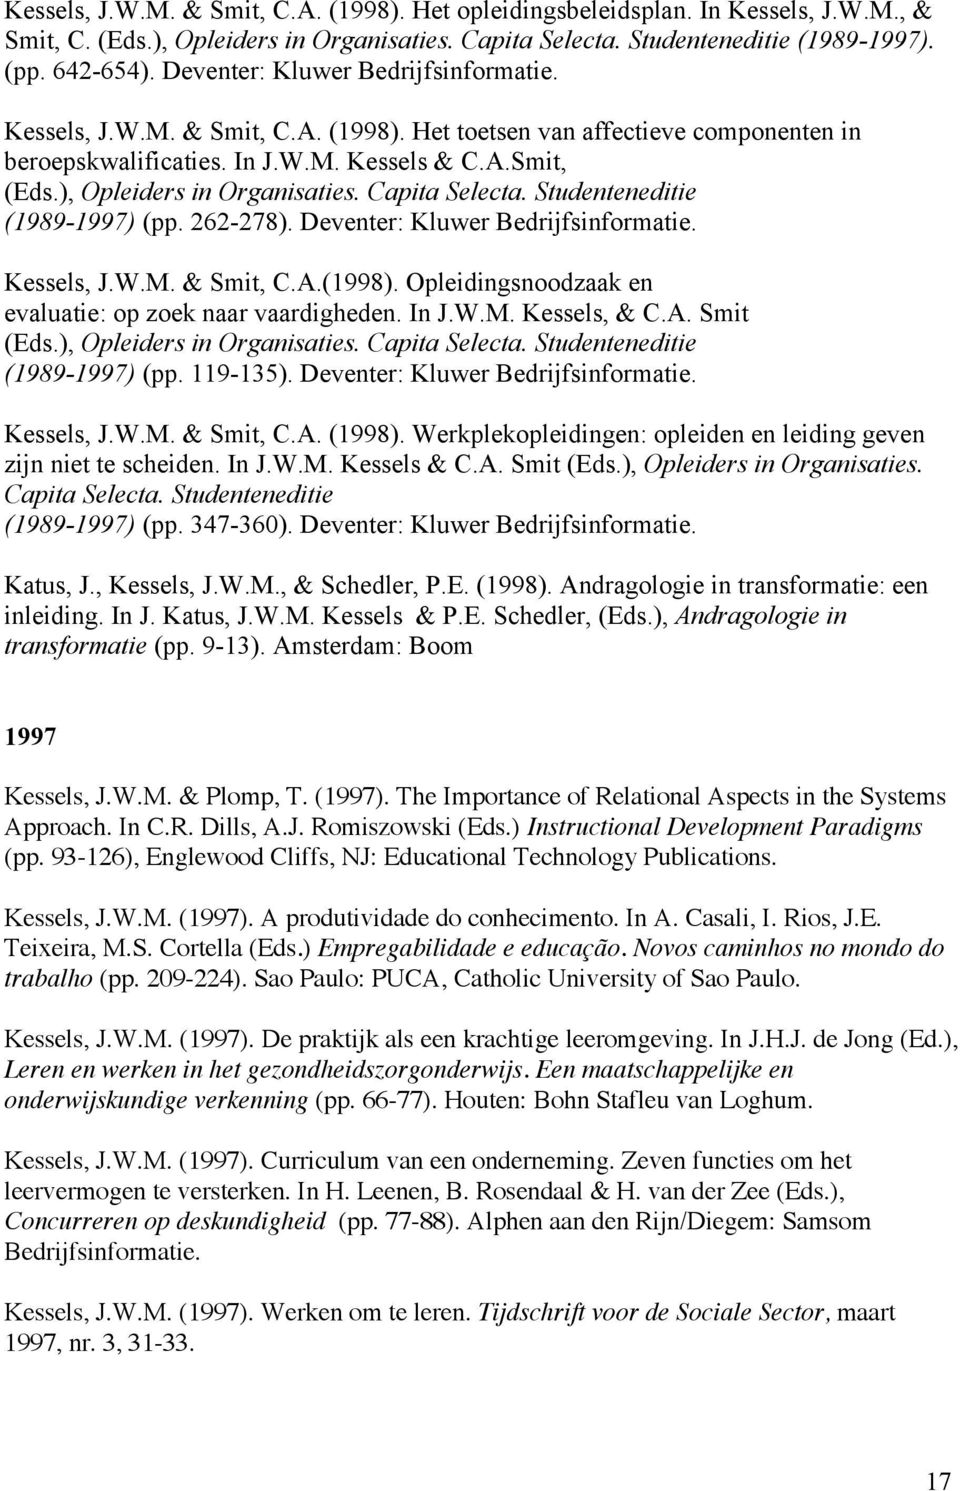 ), Opleiders in Organisaties. Capita Selecta. Studenteneditie (1989-1997) (pp. 262-278). Deventer: Kluwer Bedrijfsinformatie. Kessels, J.W.M. & Smit, C.A.(1998).